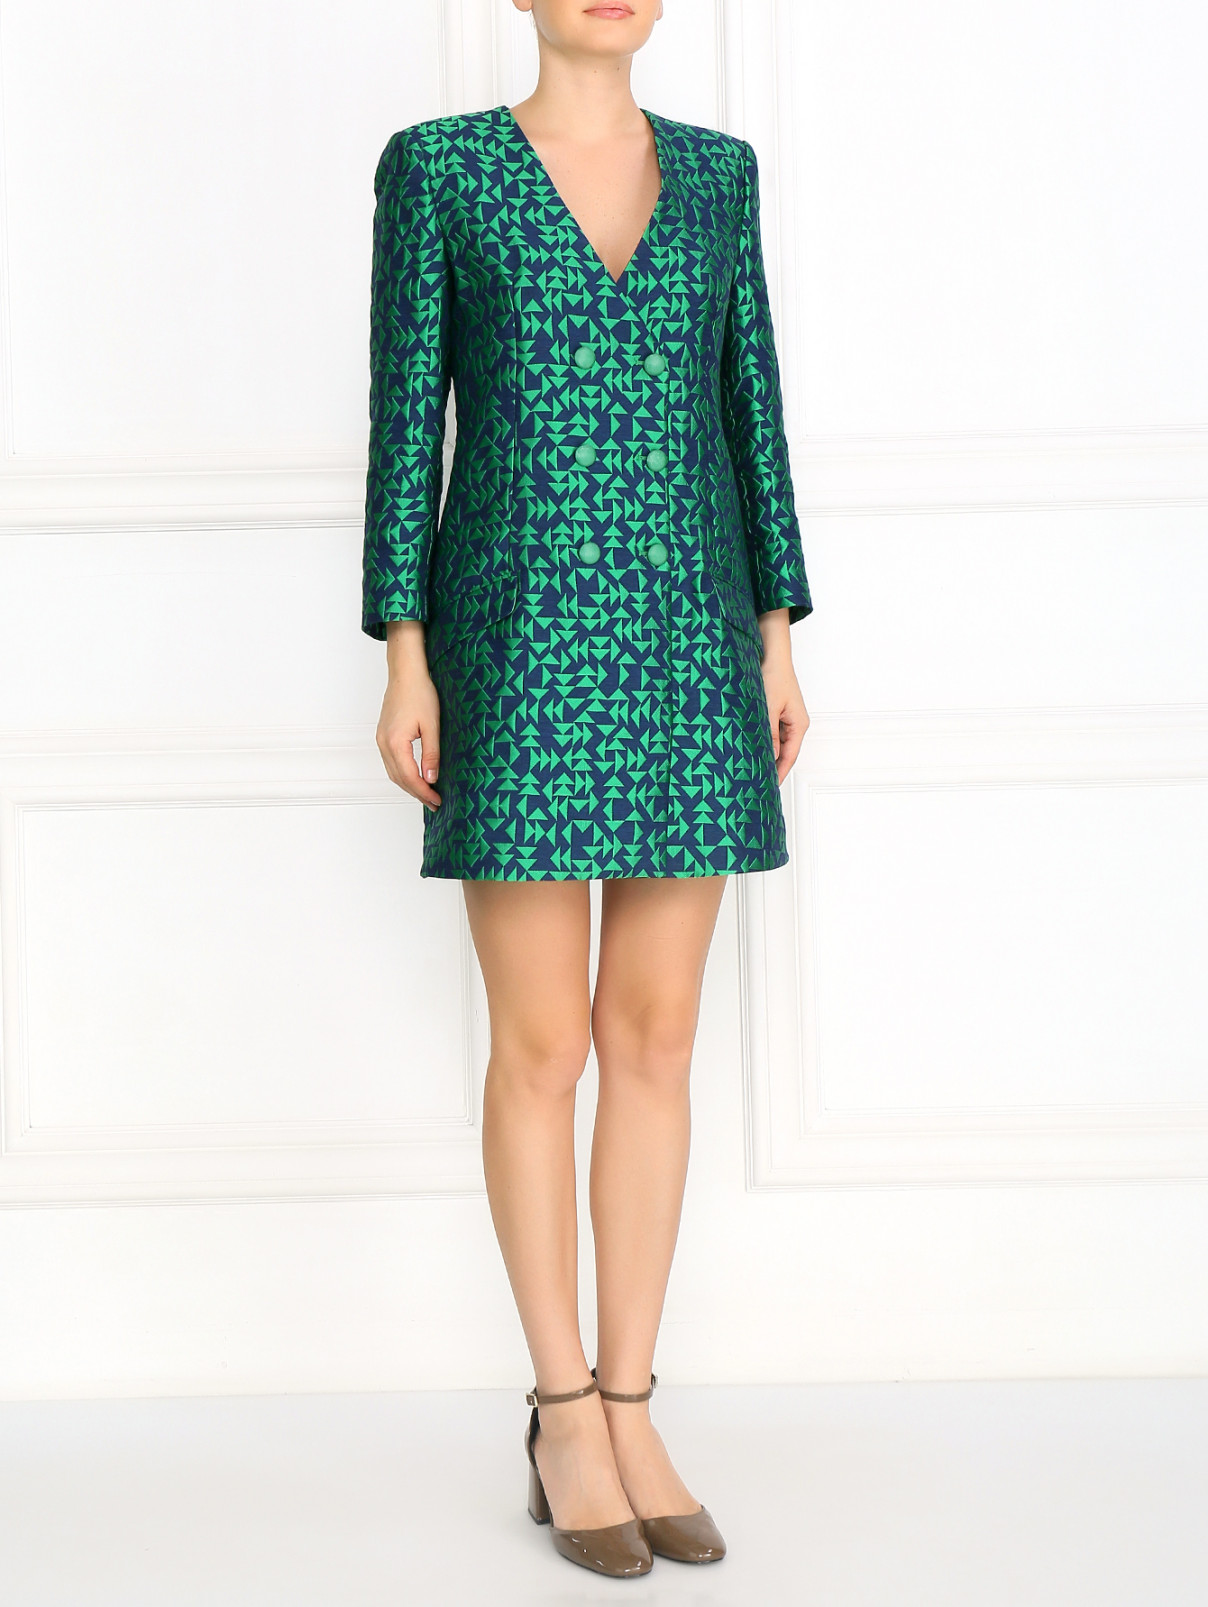 Платье с вырезом на груди и геометрическим узором Emporio Armani  –  Модель Общий вид  – Цвет:  Зеленый